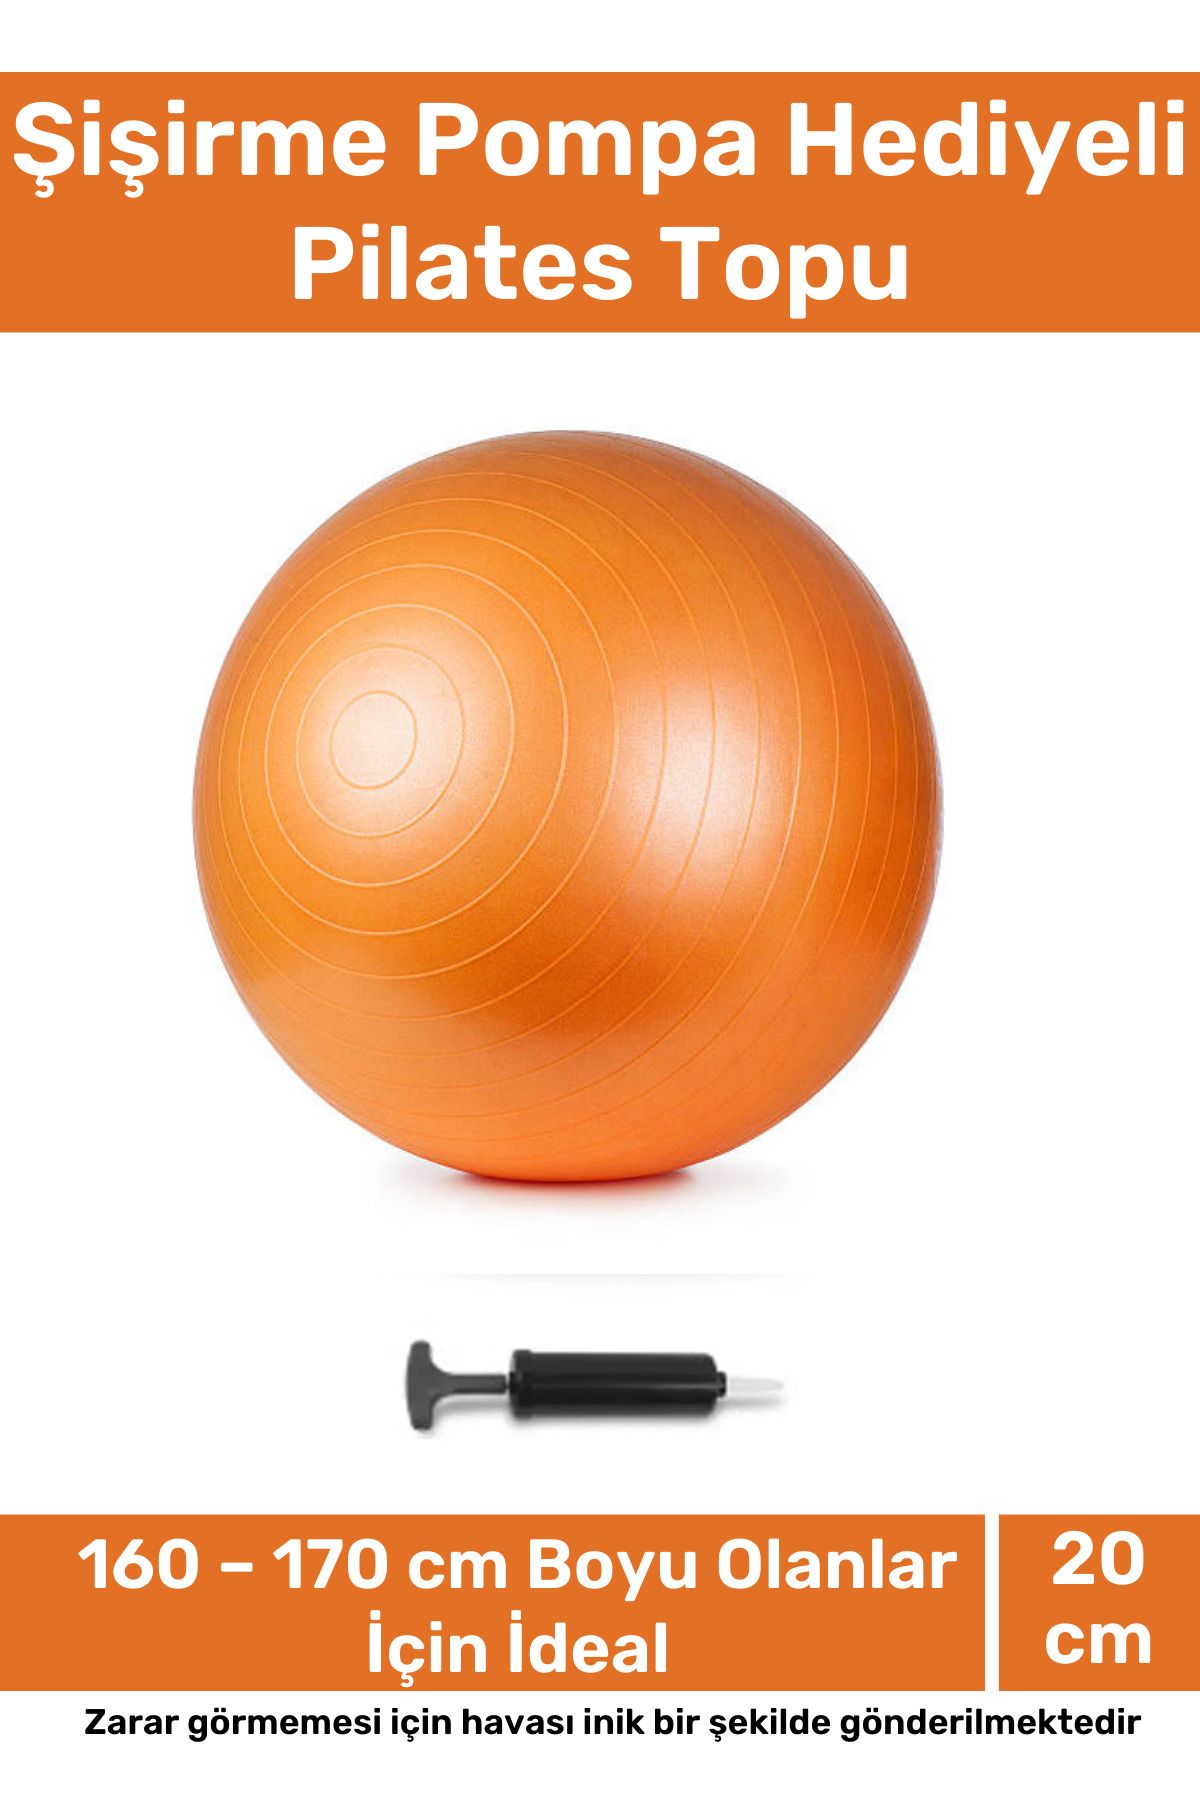 Genel Markalar Profesyonel Seri Dayanıklı Yüksek Kalite Mini Gymball 20cm Turuncu Pilates Topu Şişirme Pompa Hediye